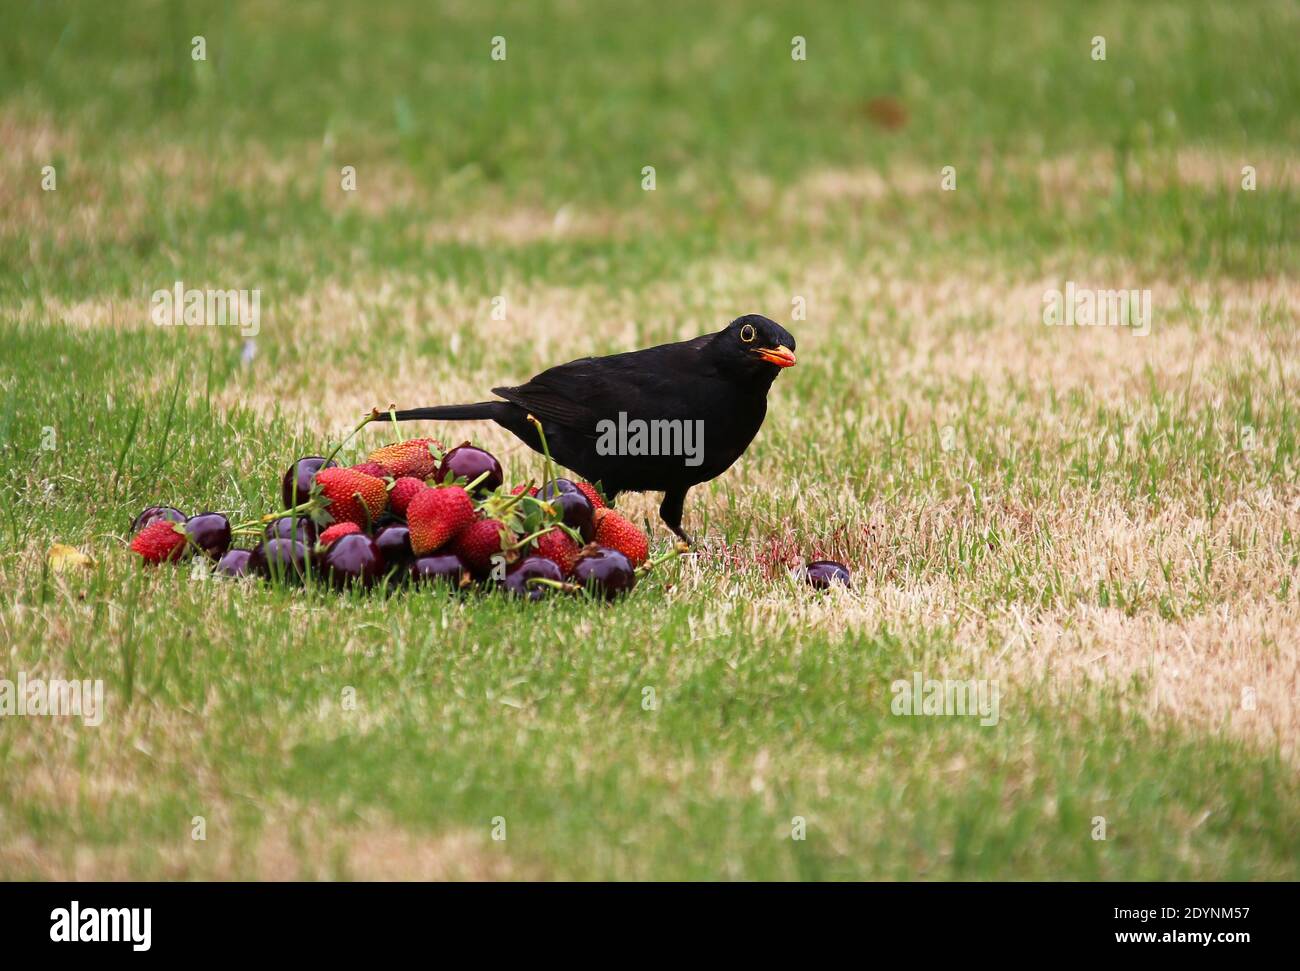 Blackbird eating Cherries and Strawberries. Stock Photo